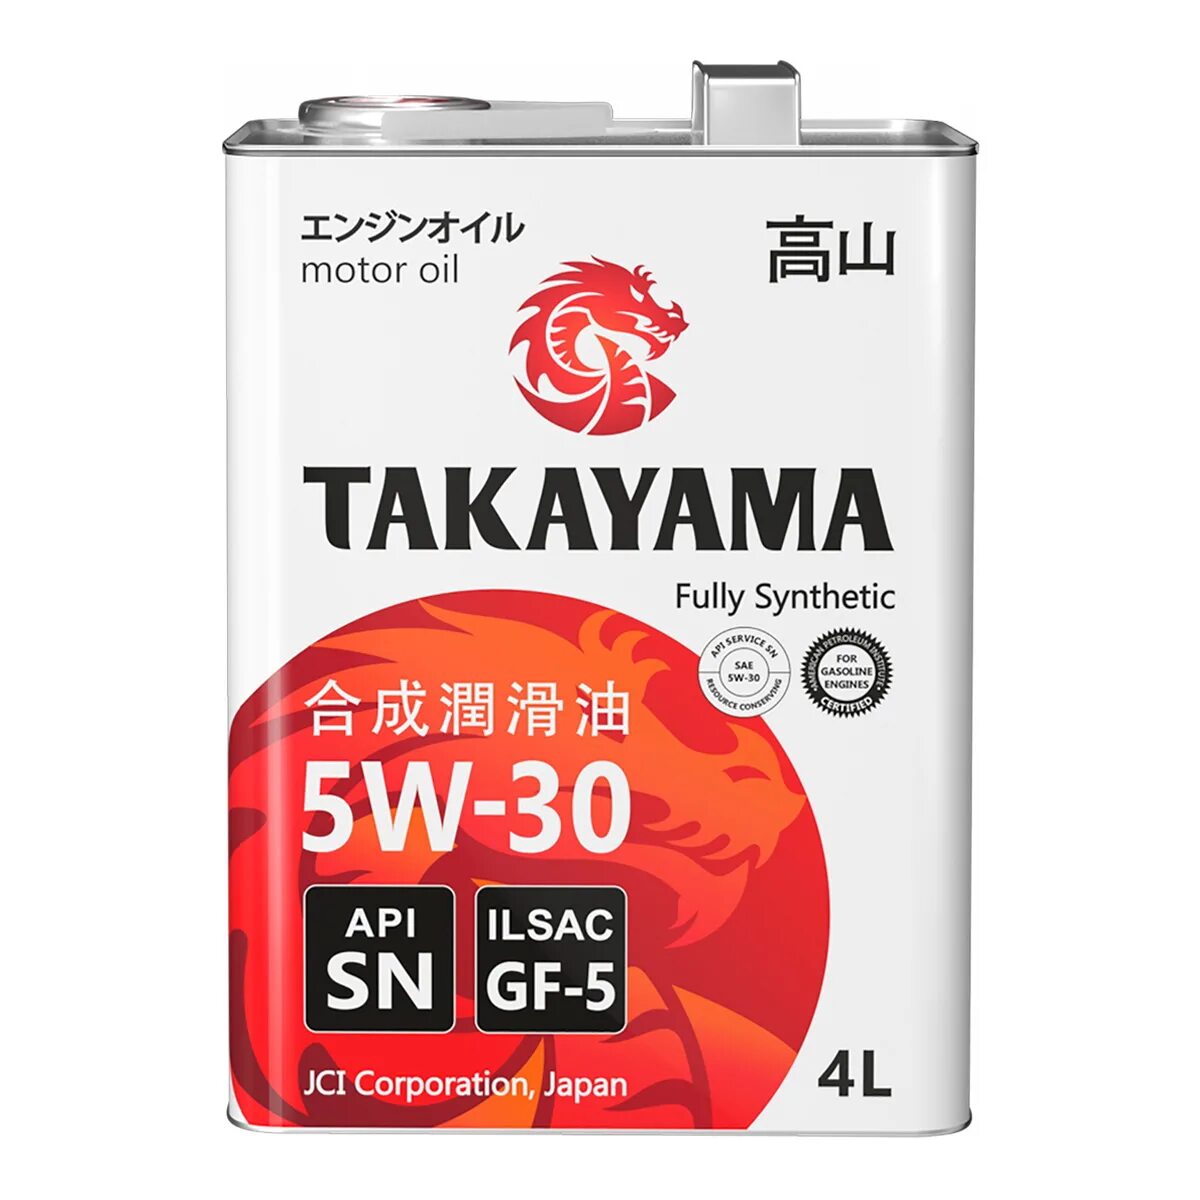 Купить моторное масло такаяма. Takayama 5w30 SN gf-5. Такаяма 5w30 ILSAC 4л 605043. Takayama SAE 5w-30, ILSAC gf-5, API SN (бочка 200л). Моторное масло Takayama 5w-40 синтетическое 4 л.